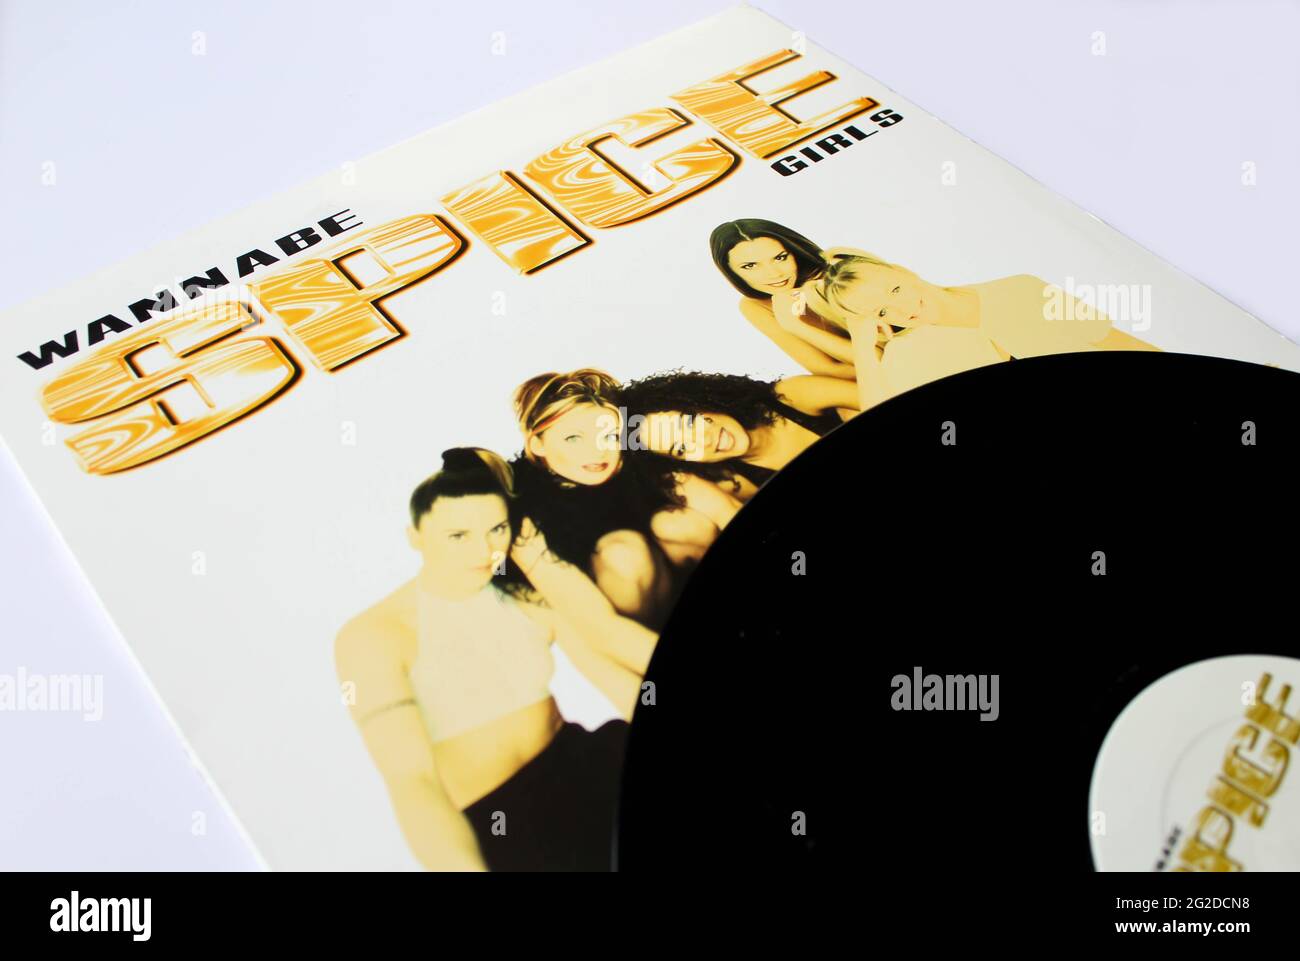 Les Spice Girls sont un groupe de groupes anglais pop girl formé en 1994. Album de musique sur disque vinyle LP. Intitulé: Couverture de l'album de Wannabe Banque D'Images